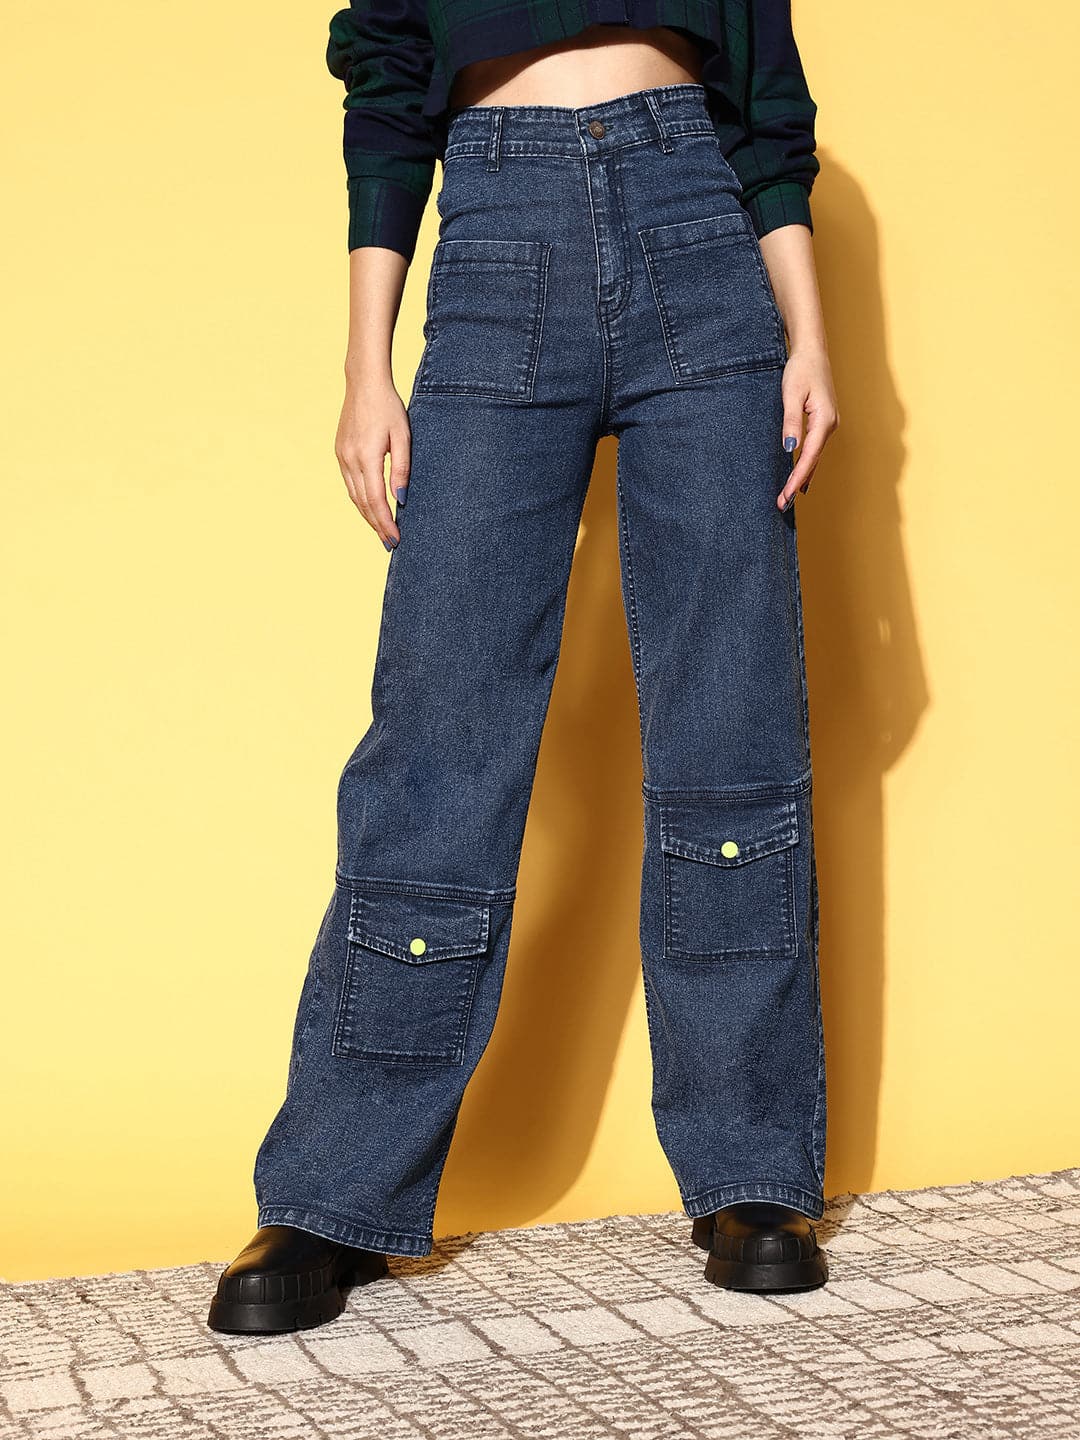 Buy Jeans For Girls Online at Sassafras